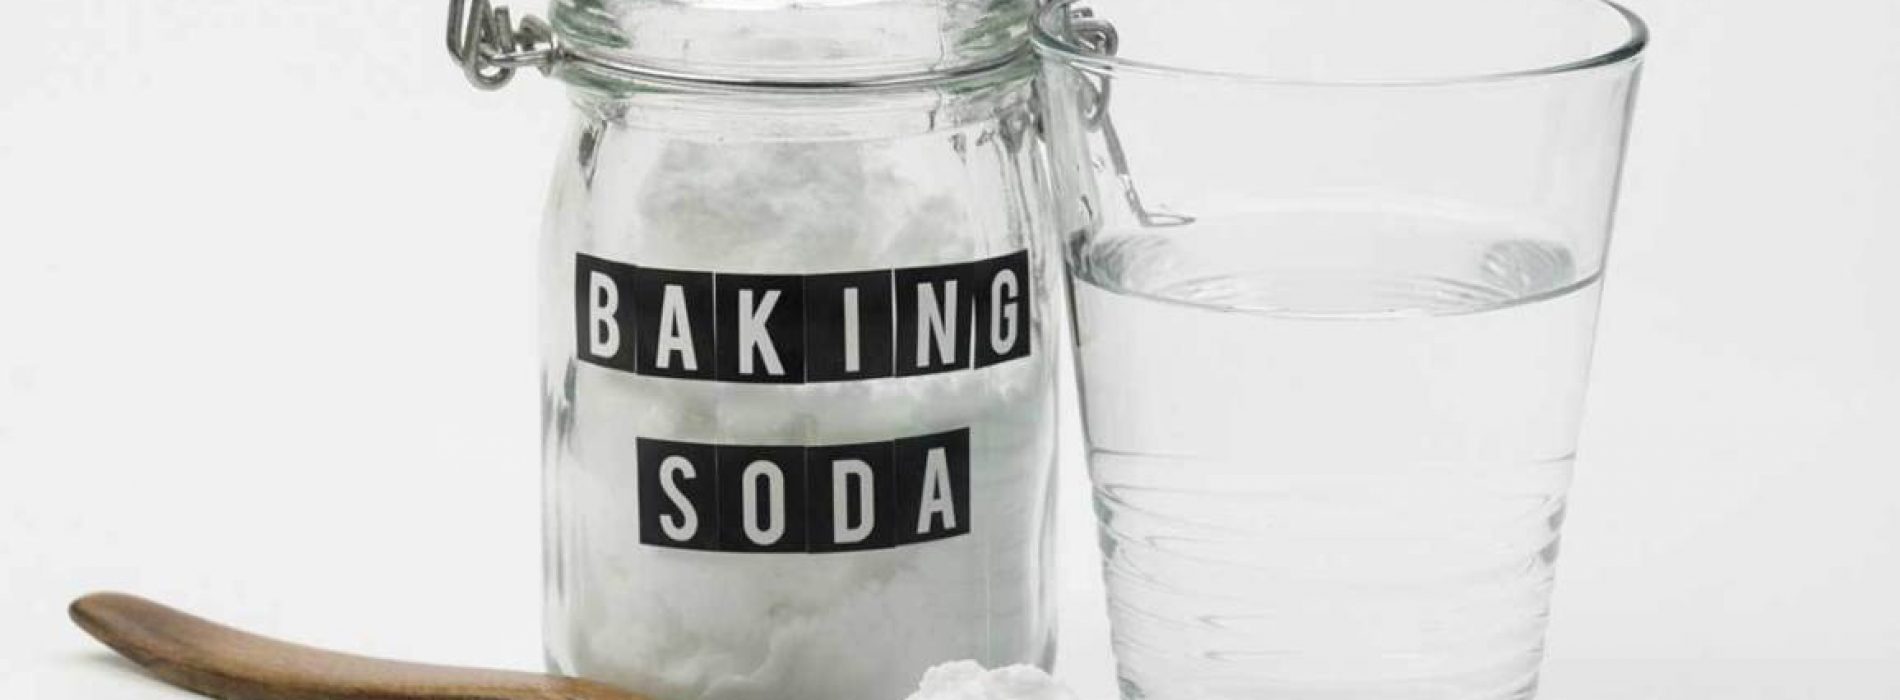 Baking Soda is een favoriet bij het schoonmaken, maar wist je dat dit ook kon?